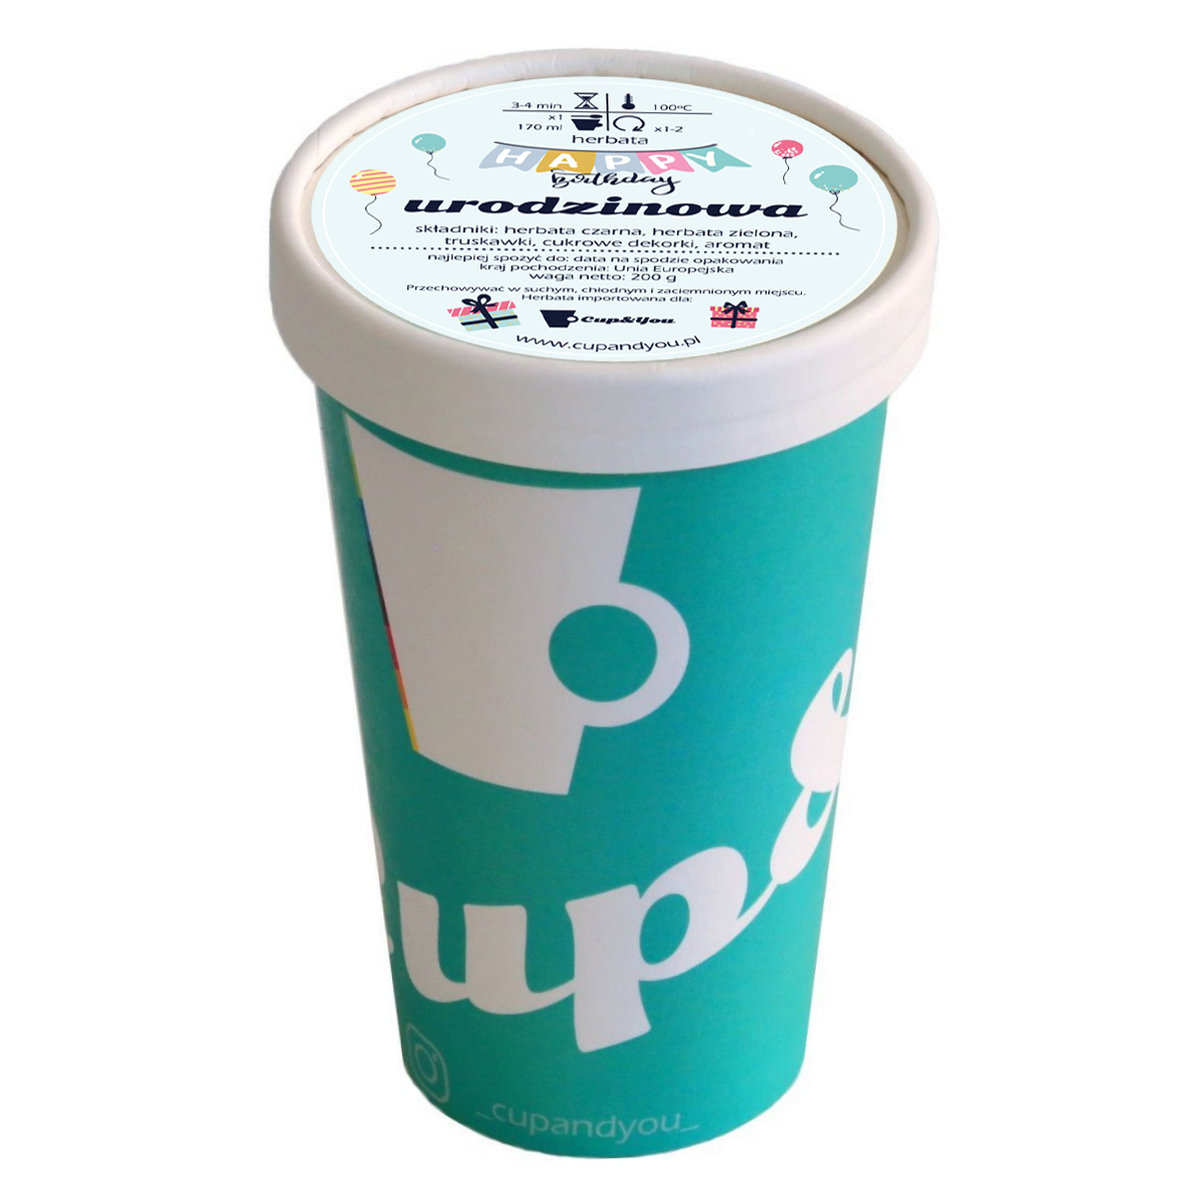 Herbata czarna smakowa CUP&YOU, urodzinowa z konfetti w EKO KUBKU, 200 g